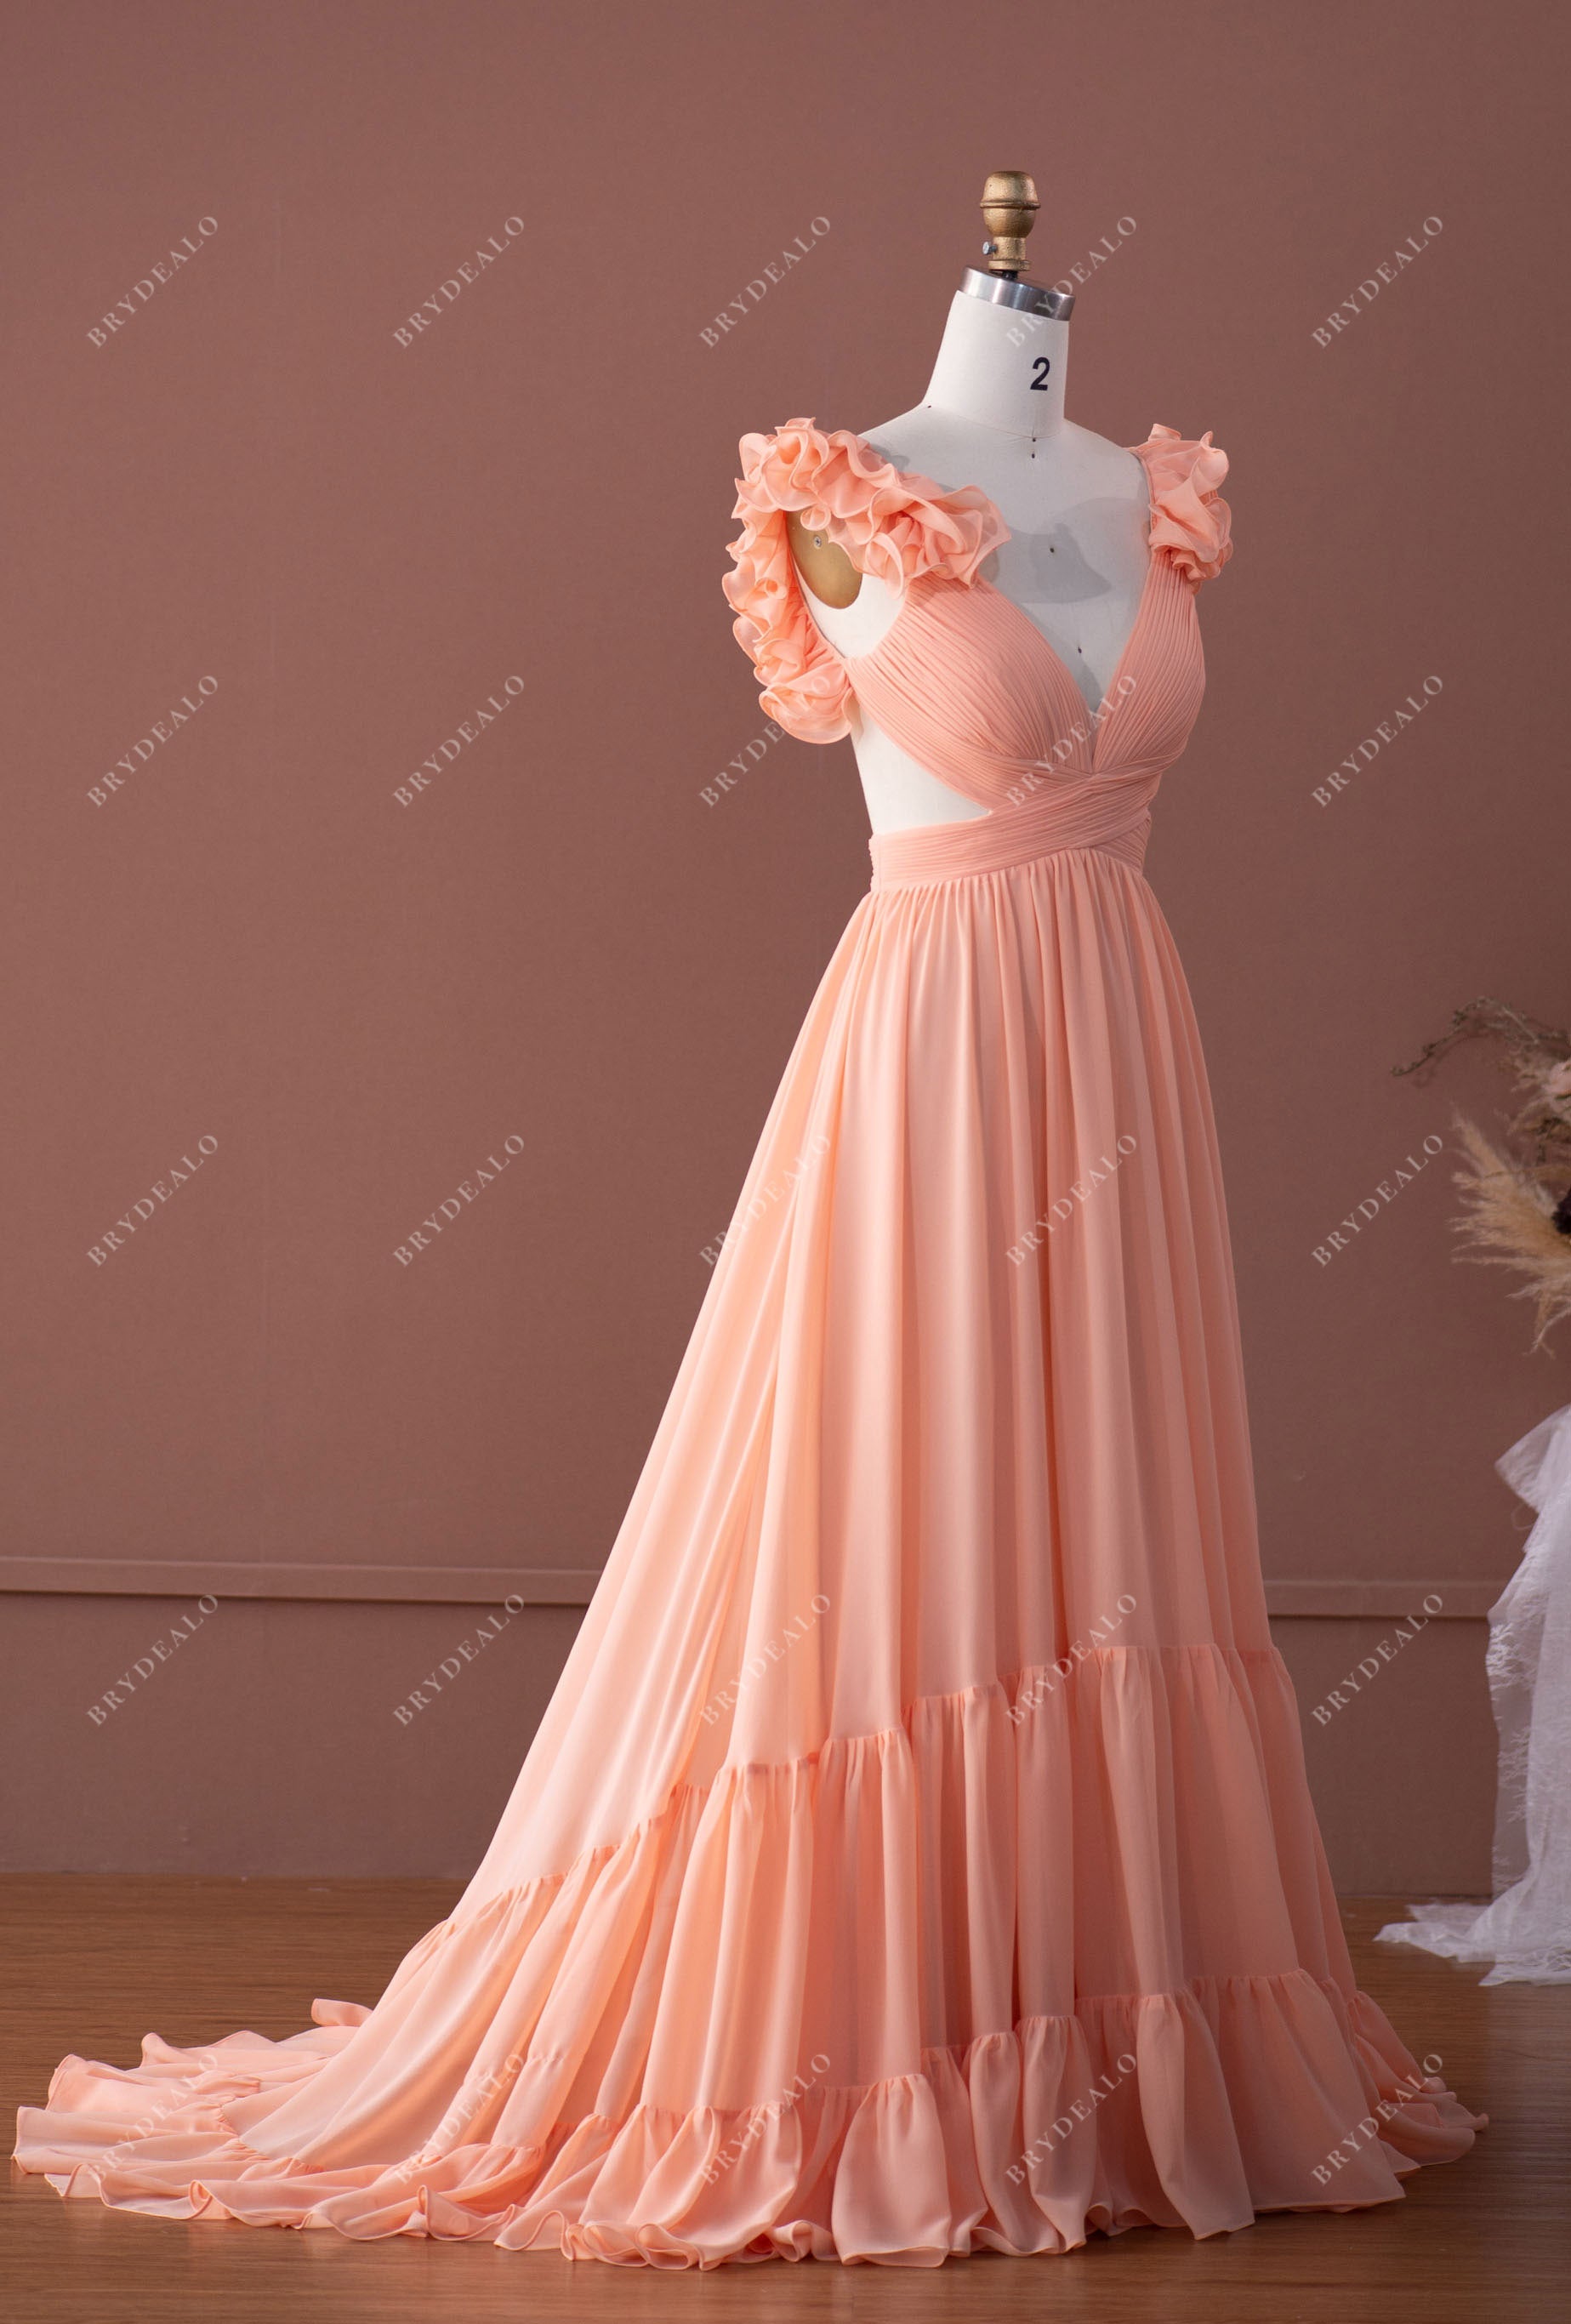 Bridal Peach Evening Gown